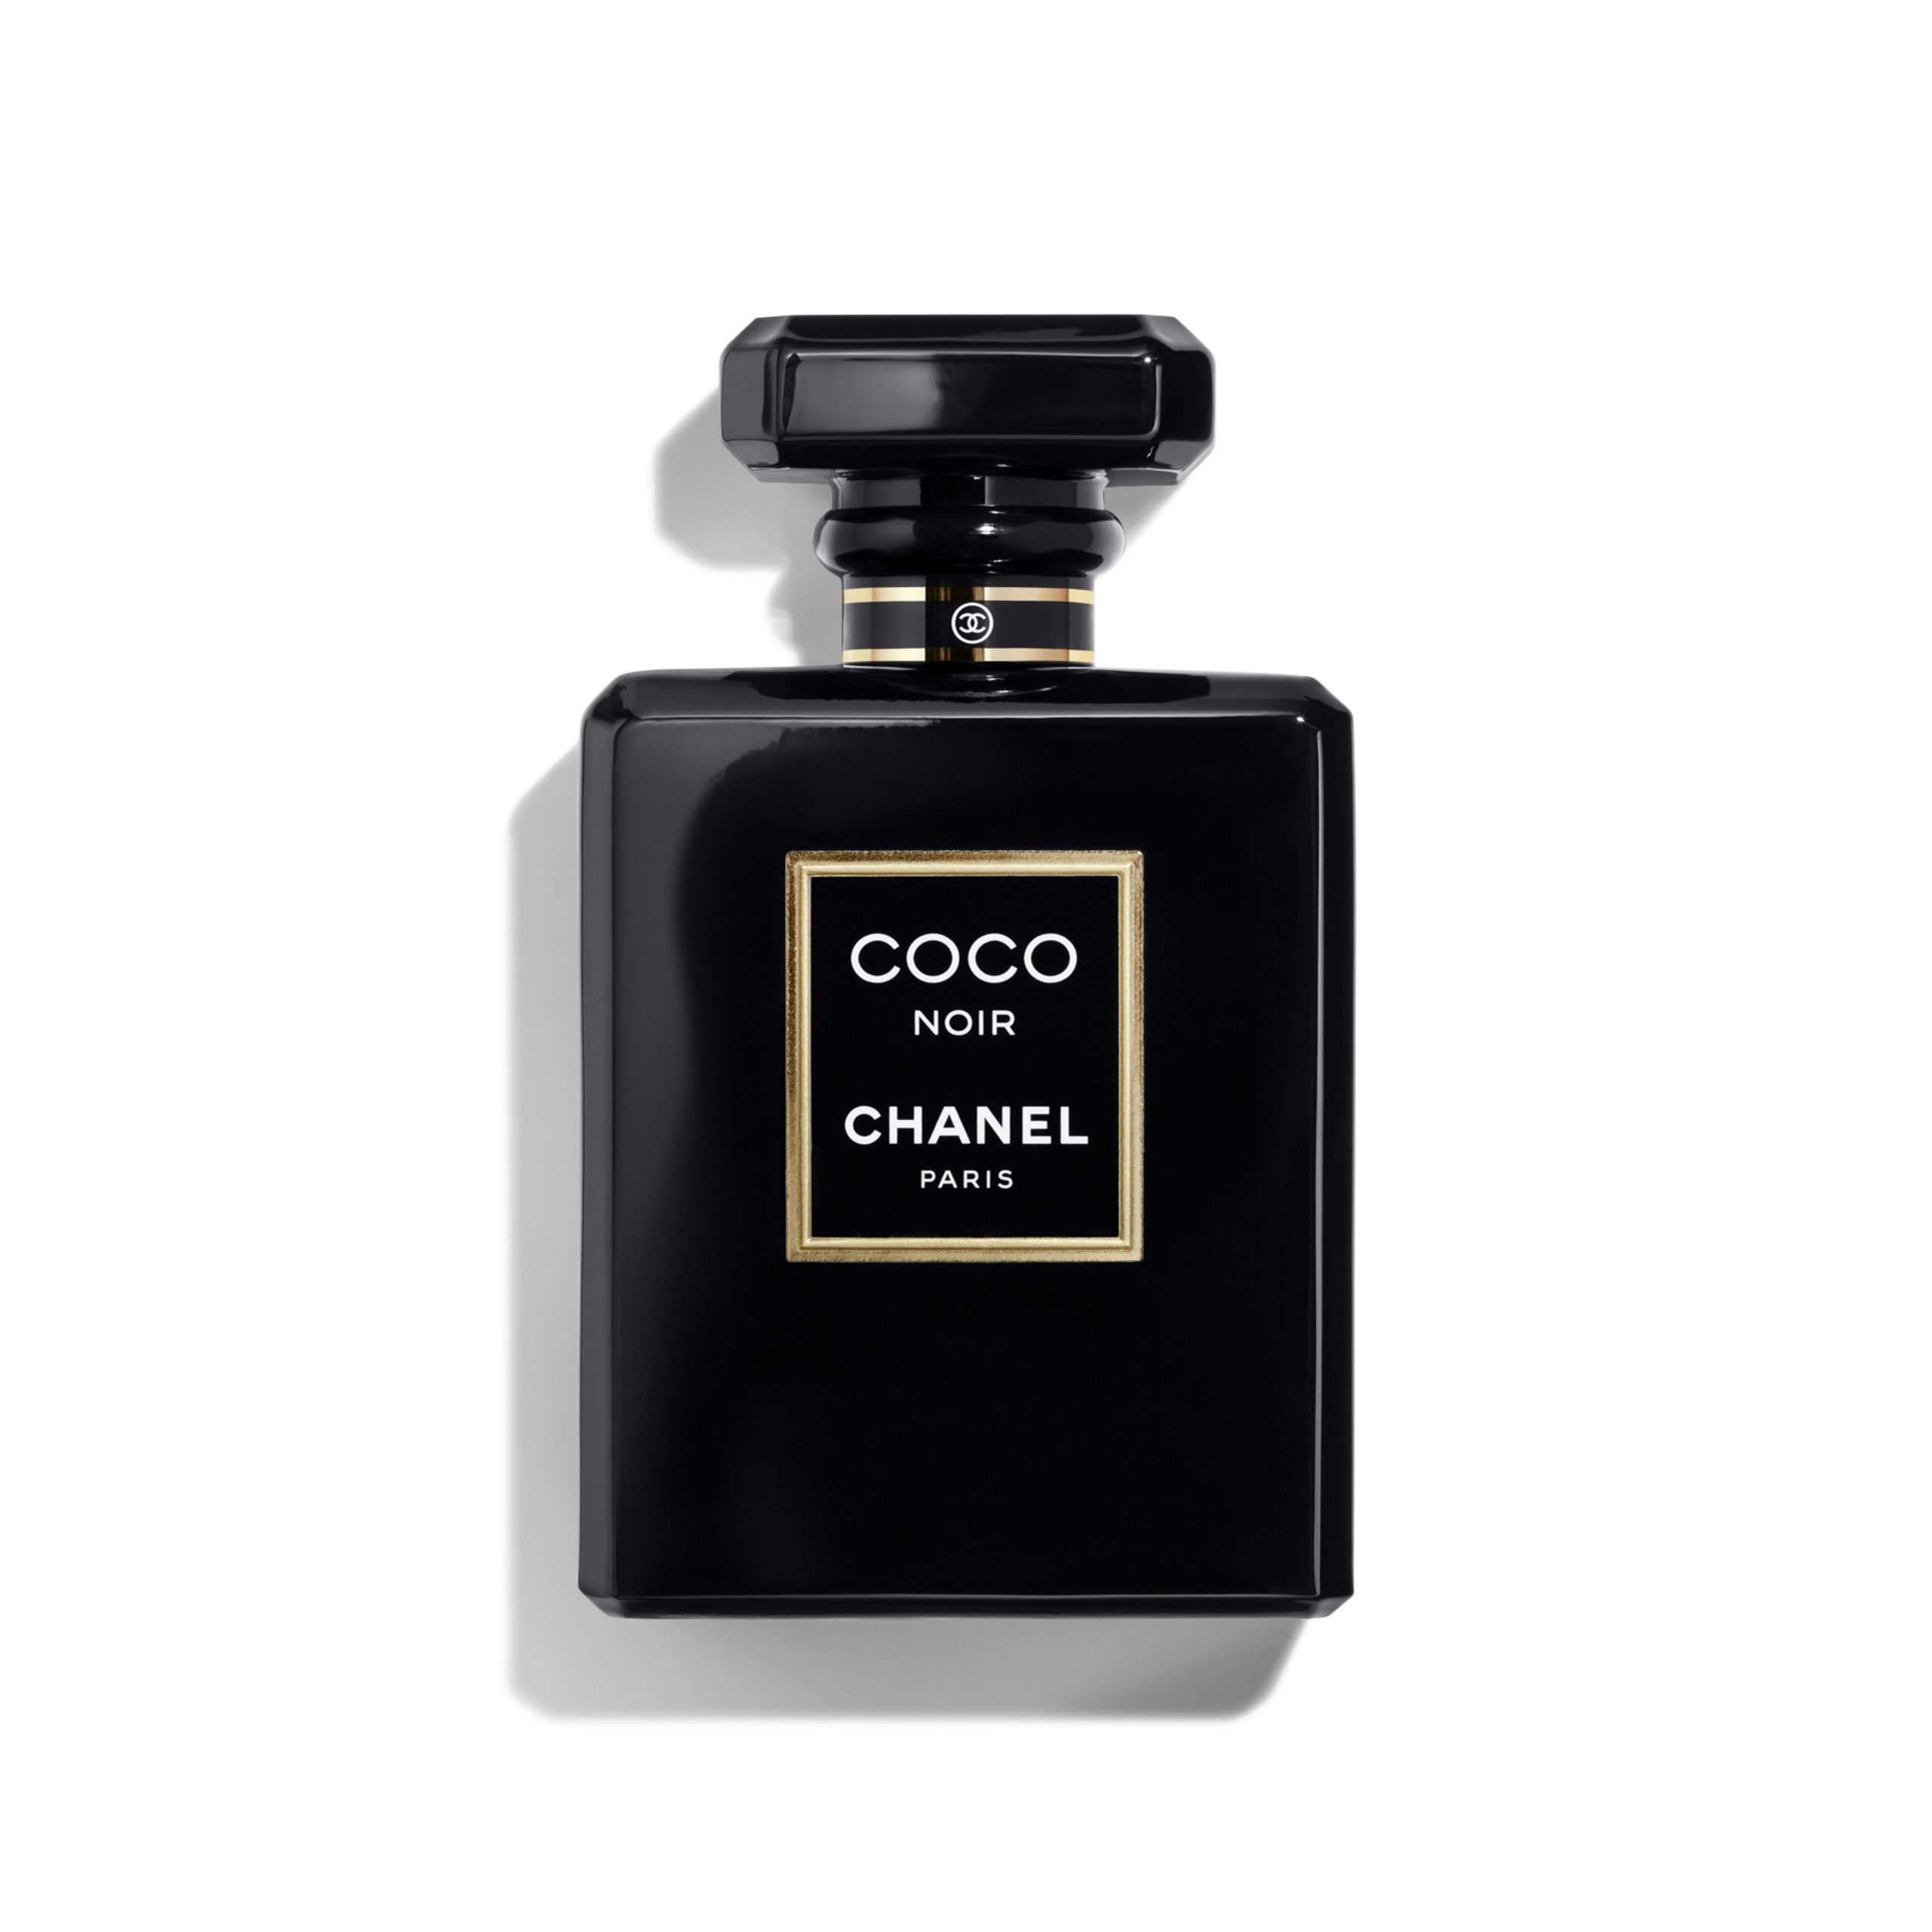 Chanel Coco Noir - Nước hoa chính hãng 100% nhập khẩu Pháp, Mỹ…Giá tốt tại  Perfume168